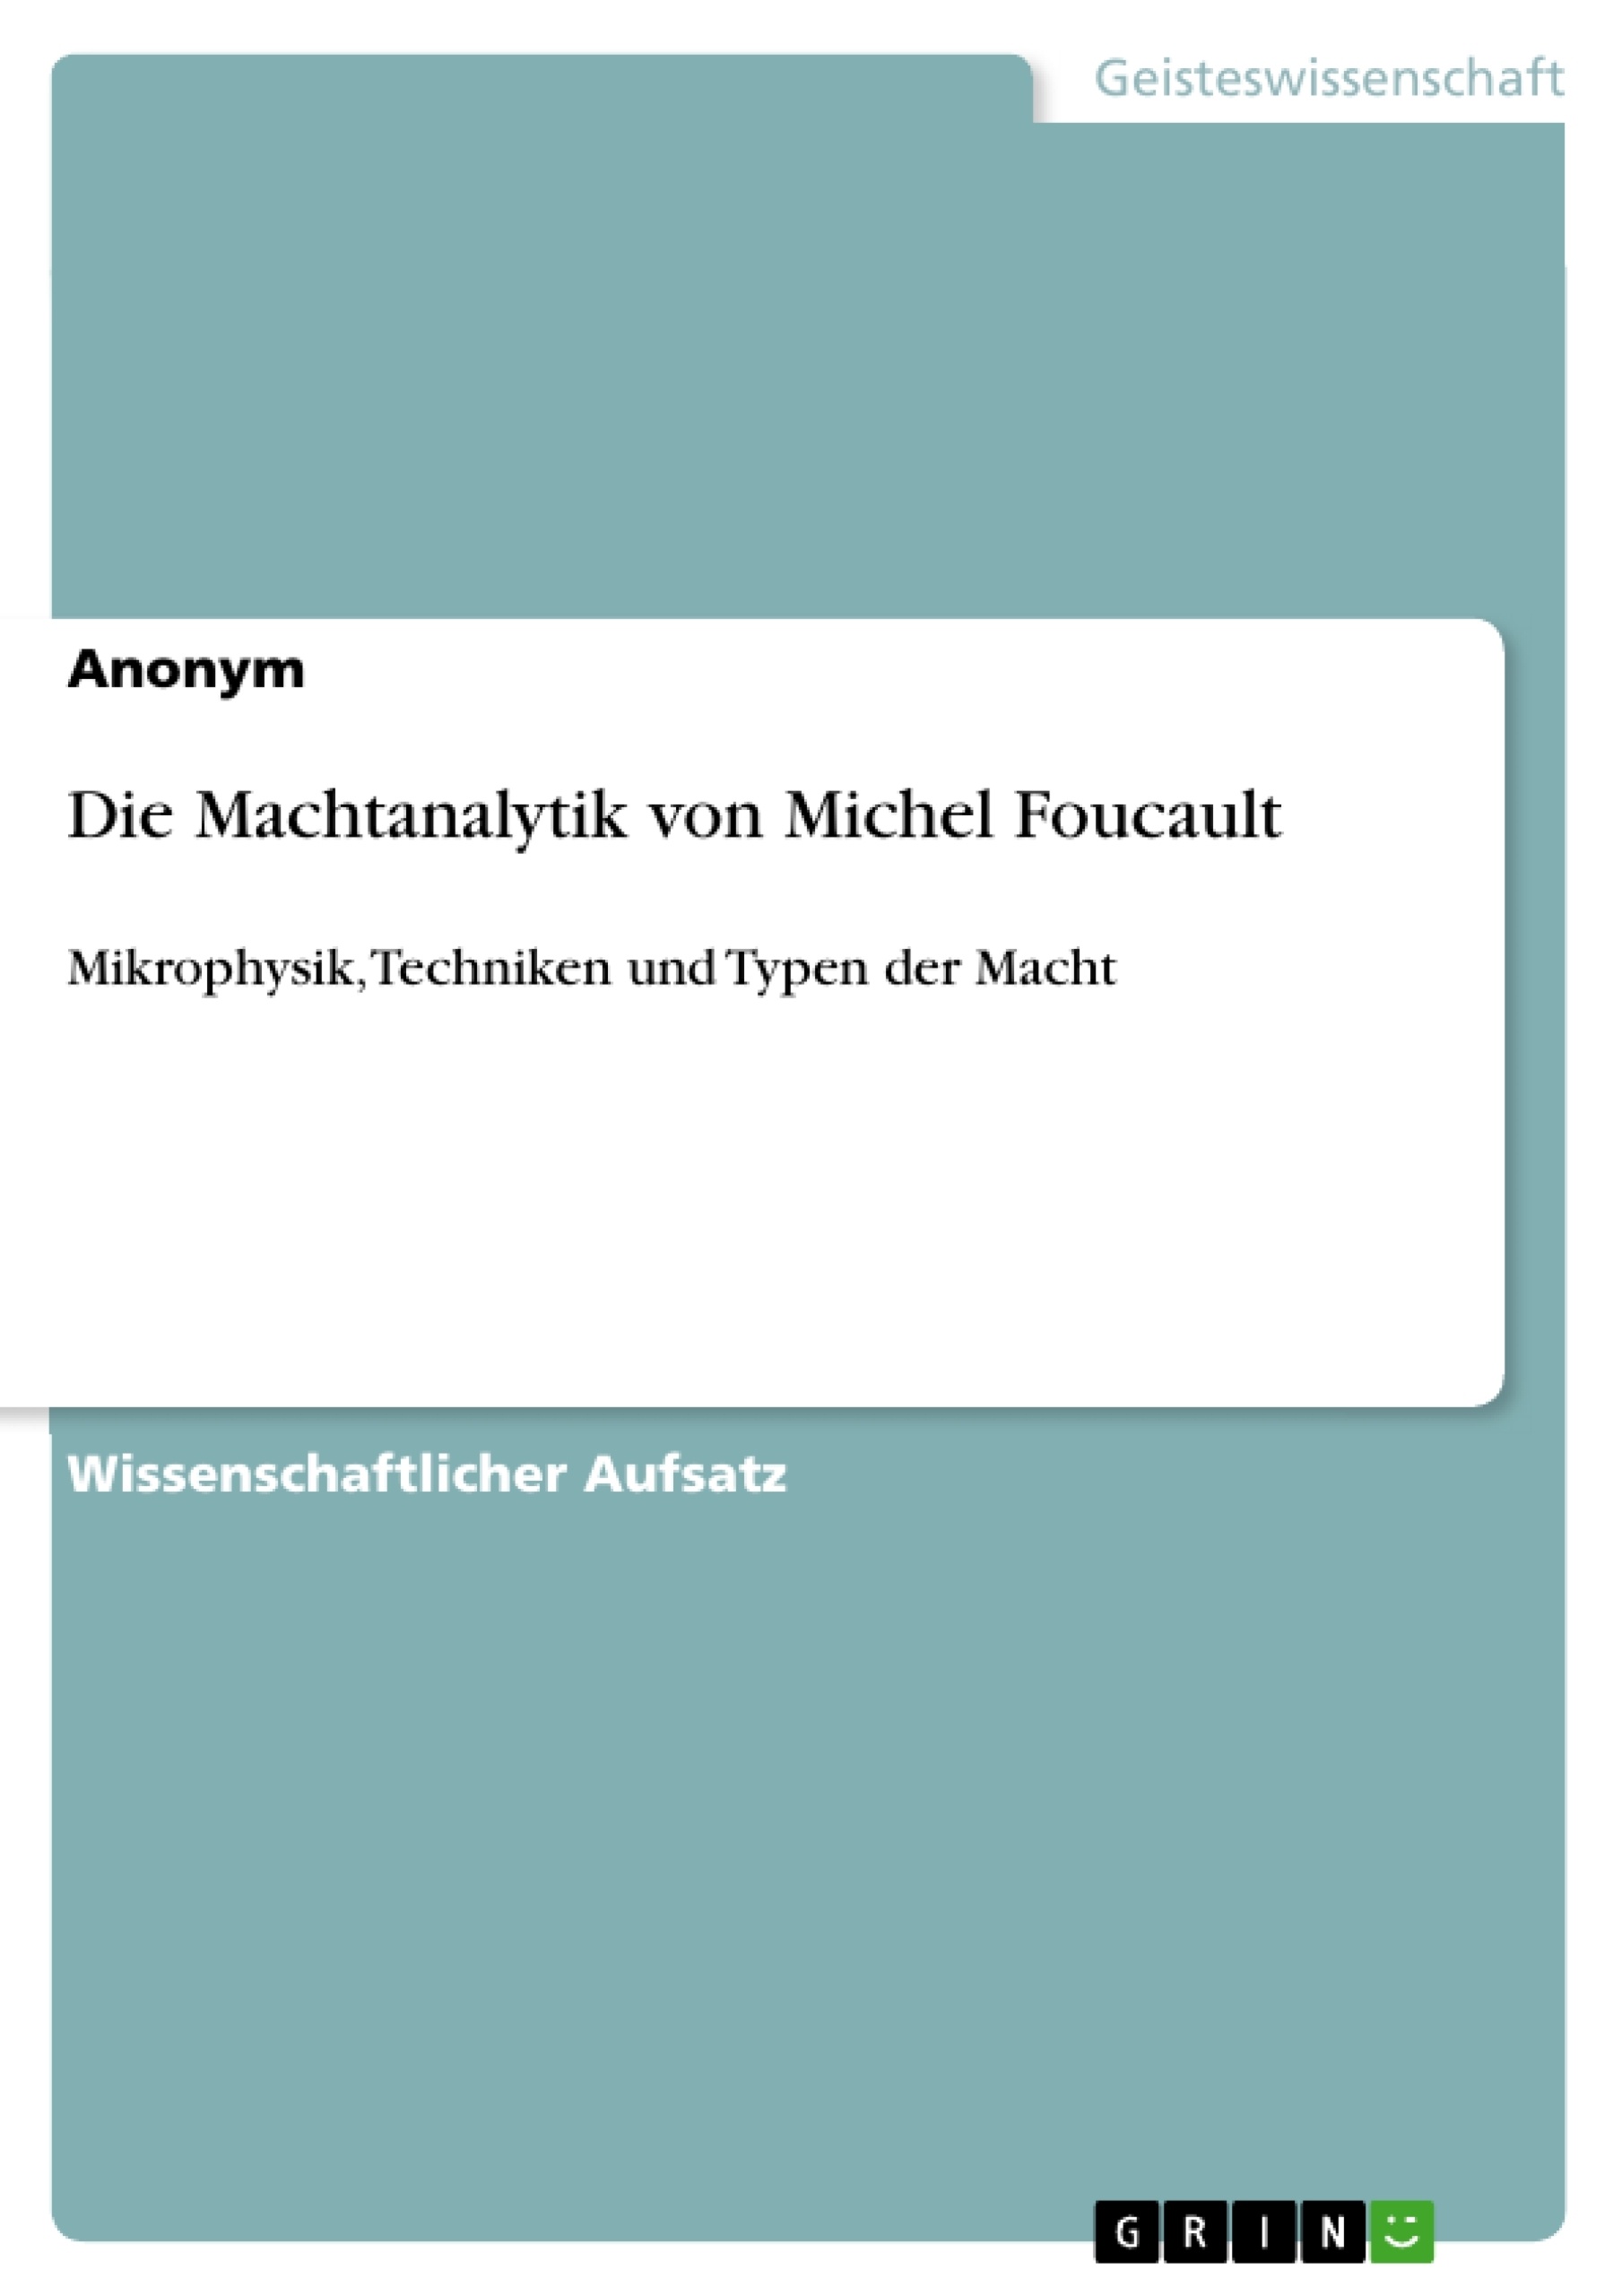 Título: Die Machtanalytik von Michel Foucault